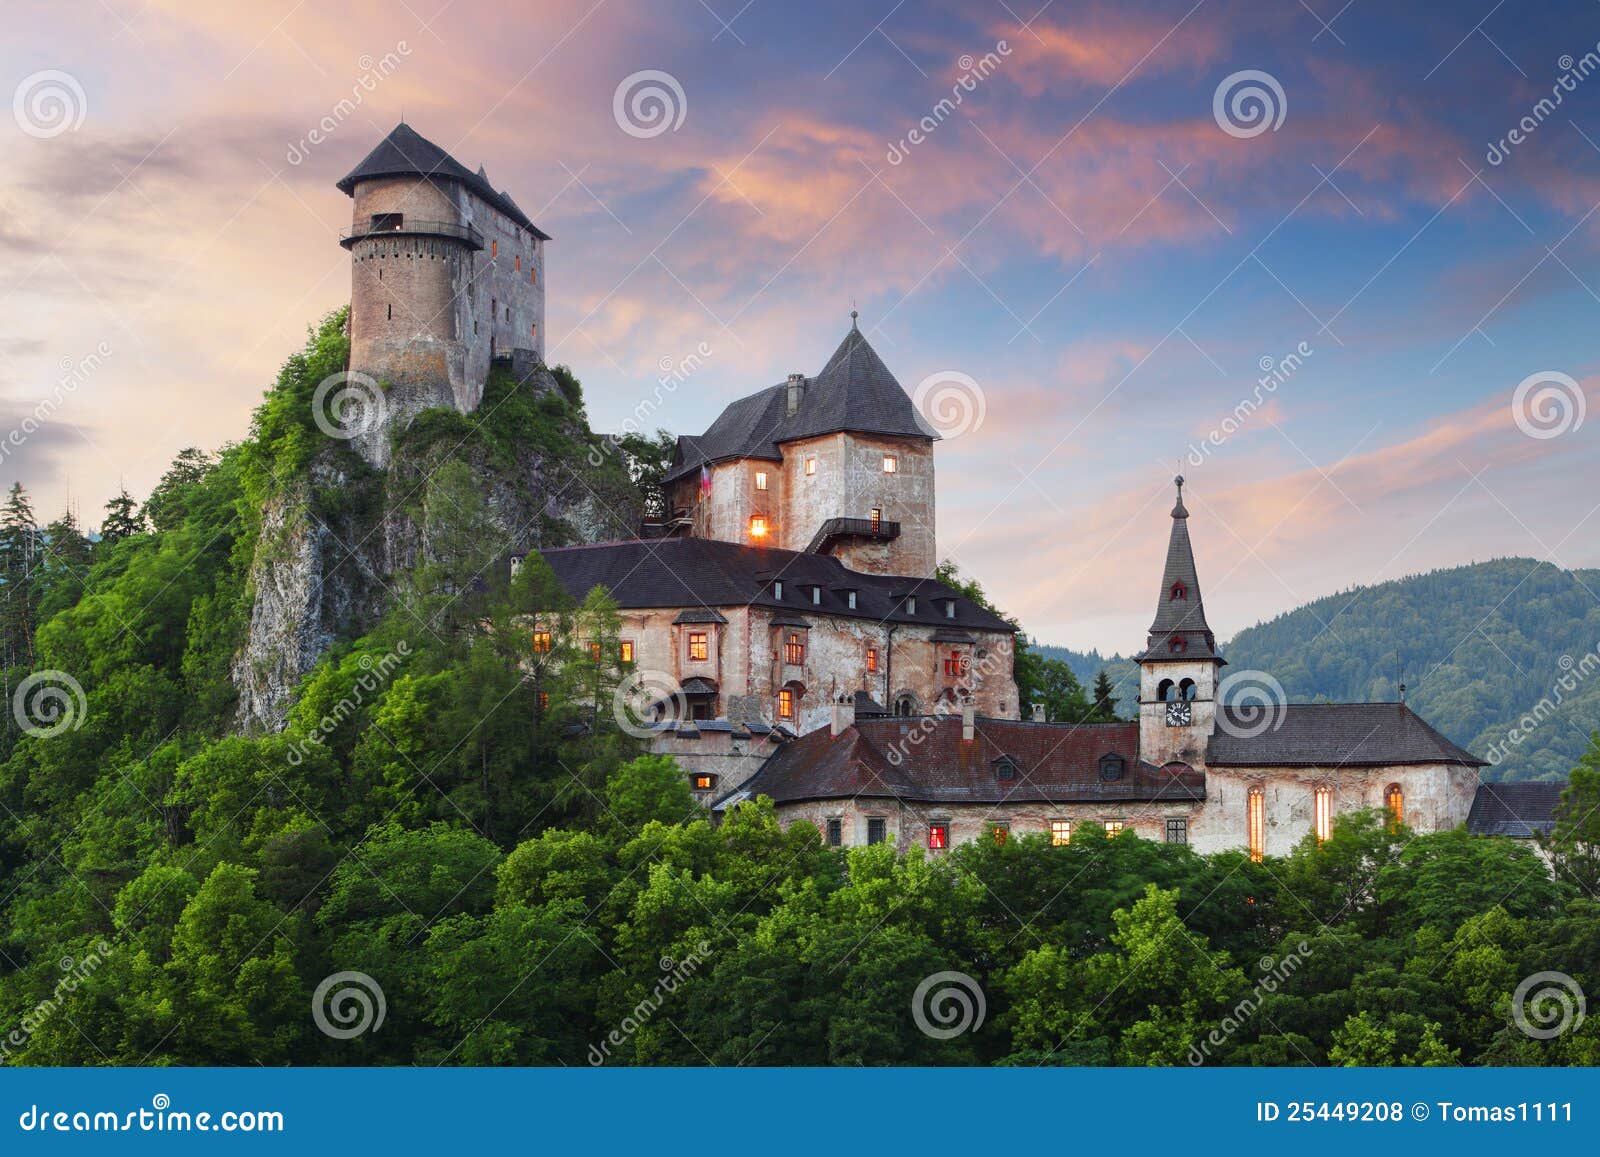 slovakia castle at sunset - oravsky hrad